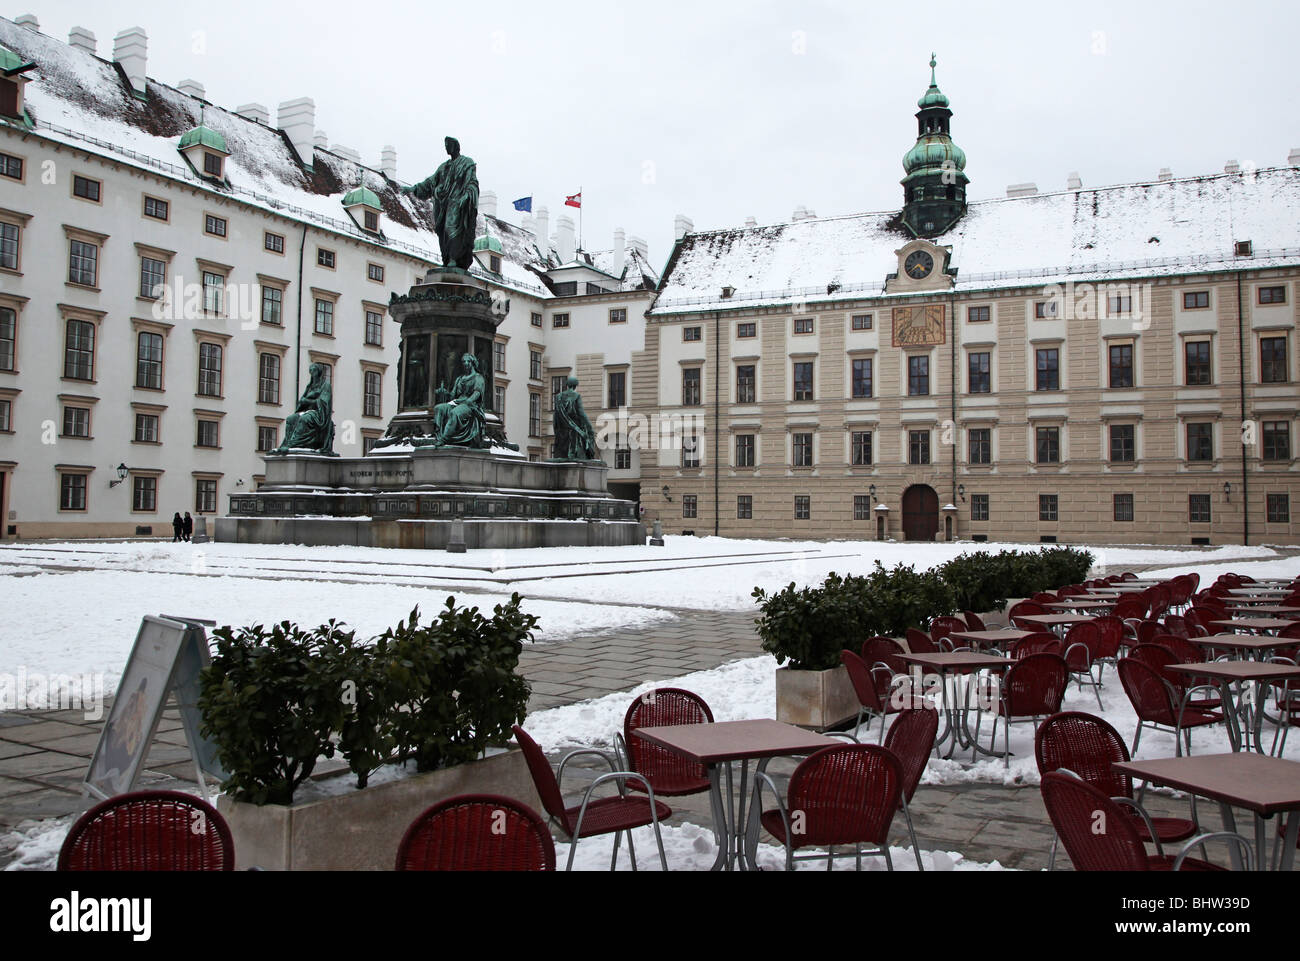 L'architecture baroque traditionnelle au palais impérial Hofburg Vienne Autriche Europe Banque D'Images